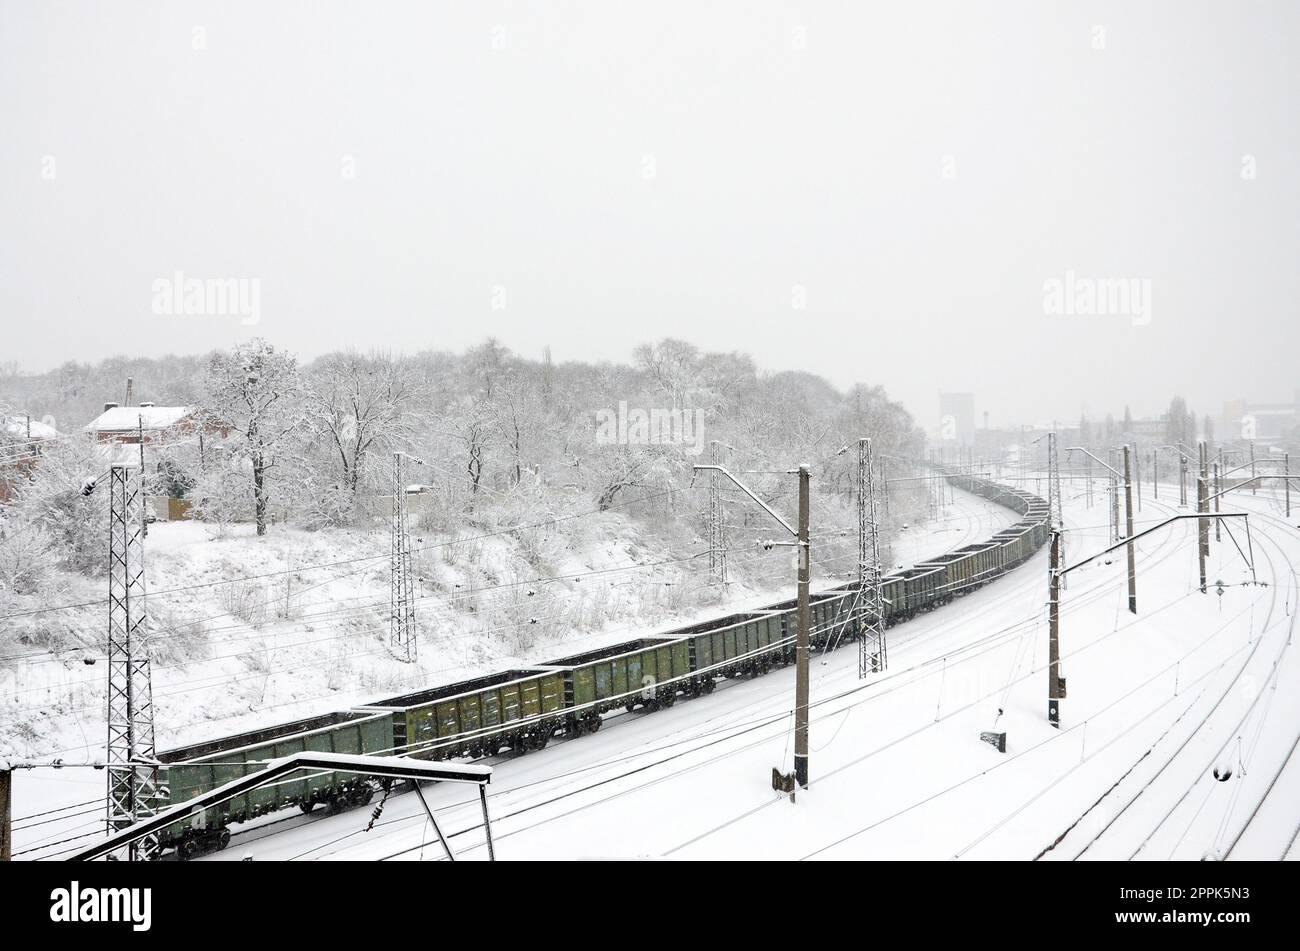 Un long train de wagons de marchandises se déplace le long de la voie ferrée. Paysage ferroviaire en hiver après les chutes de neige Banque D'Images